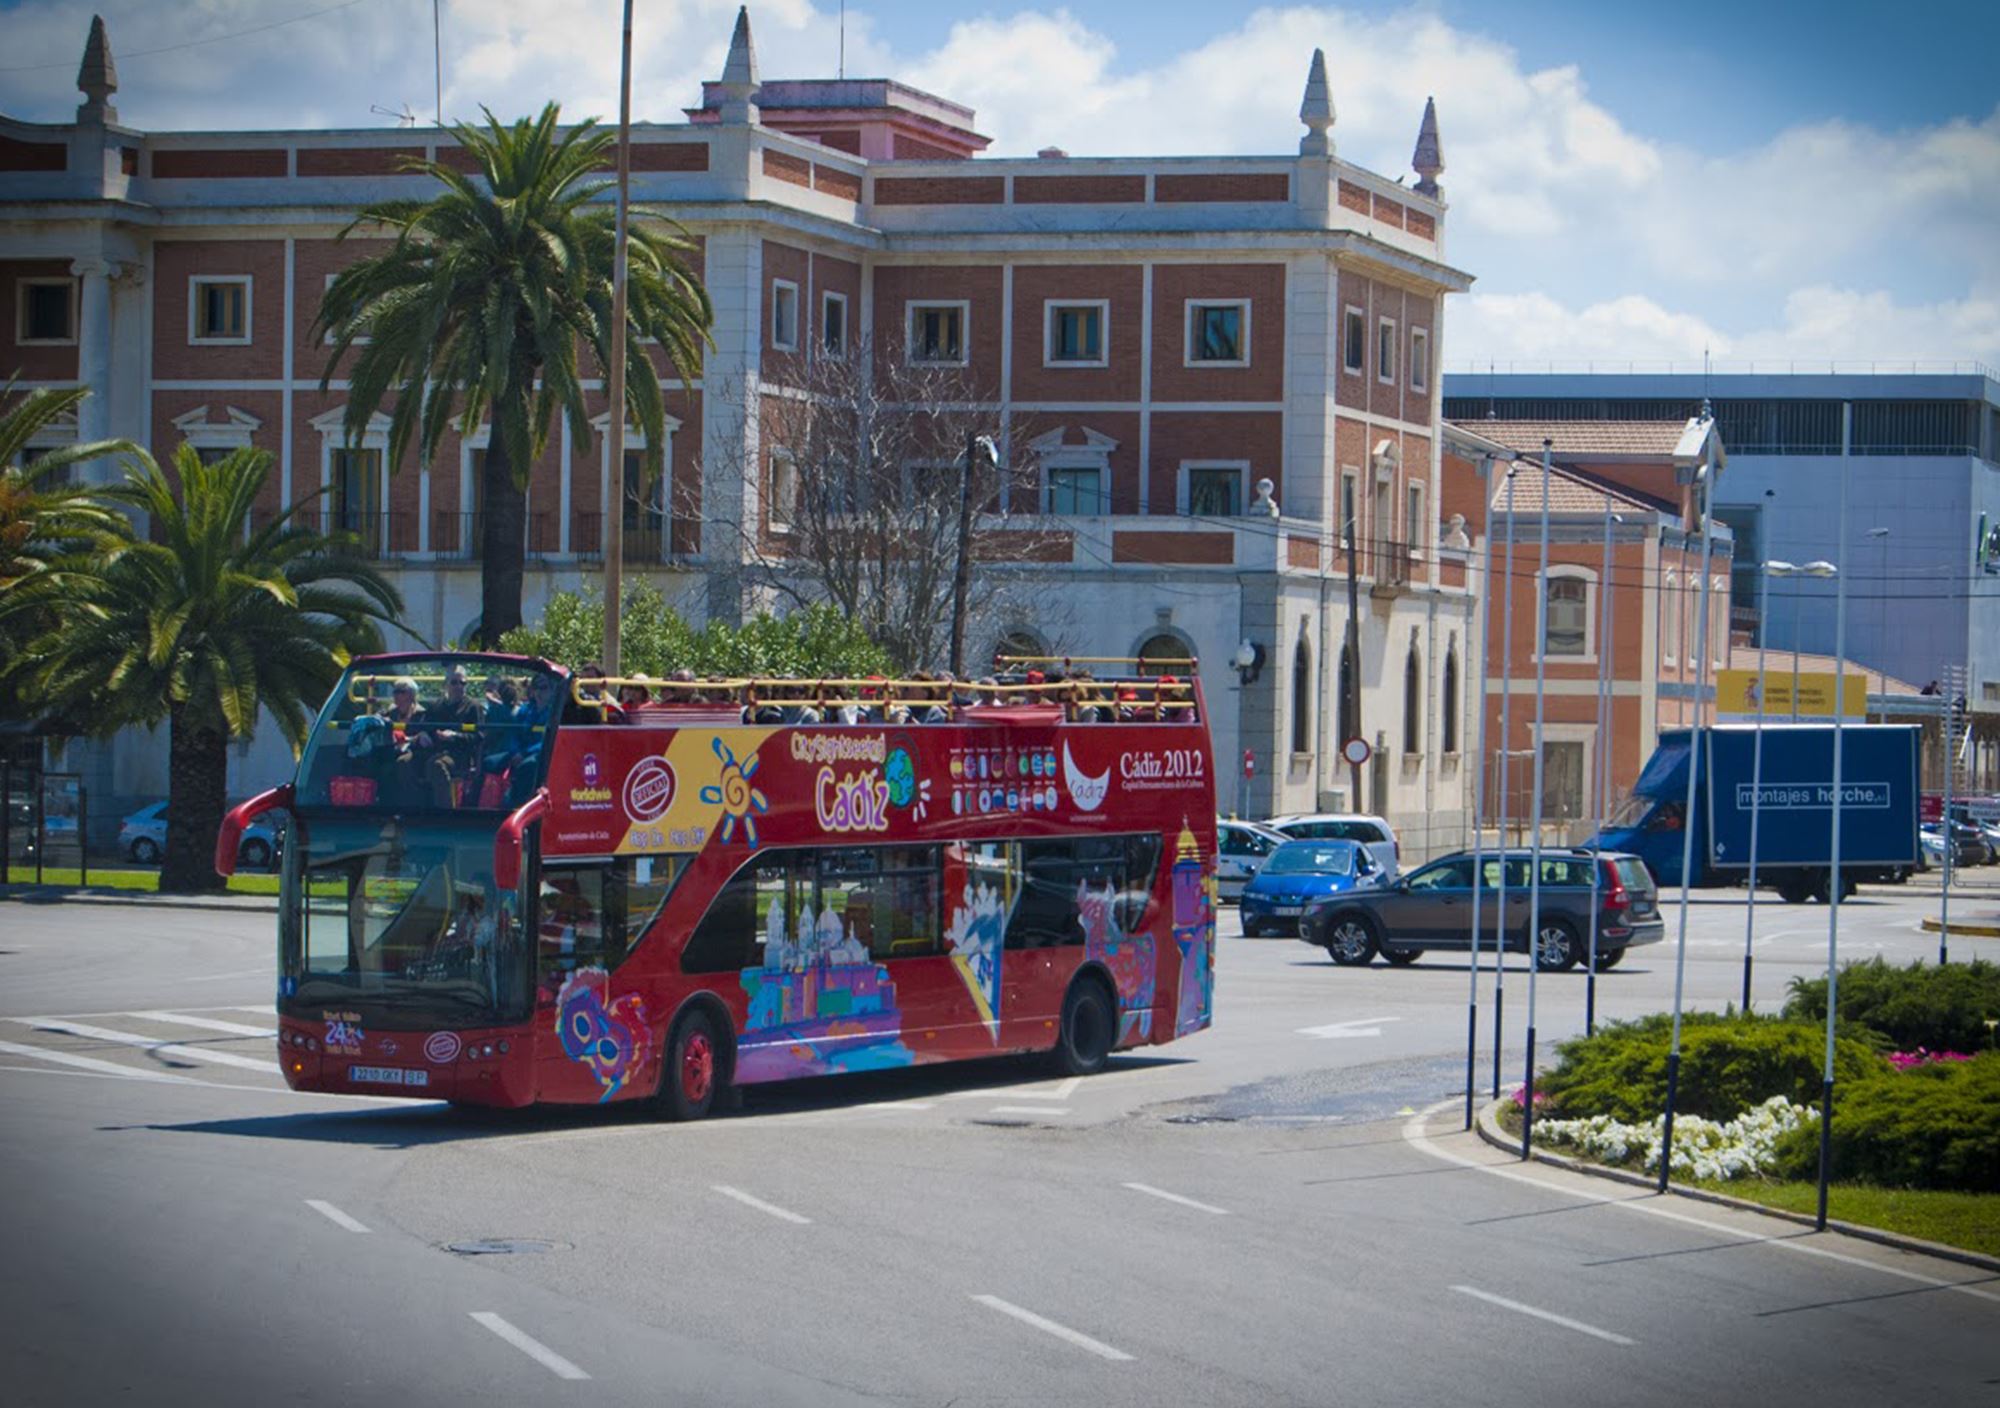 réserver tours Bus Touristique City Sightseeing Cadix billets visiter